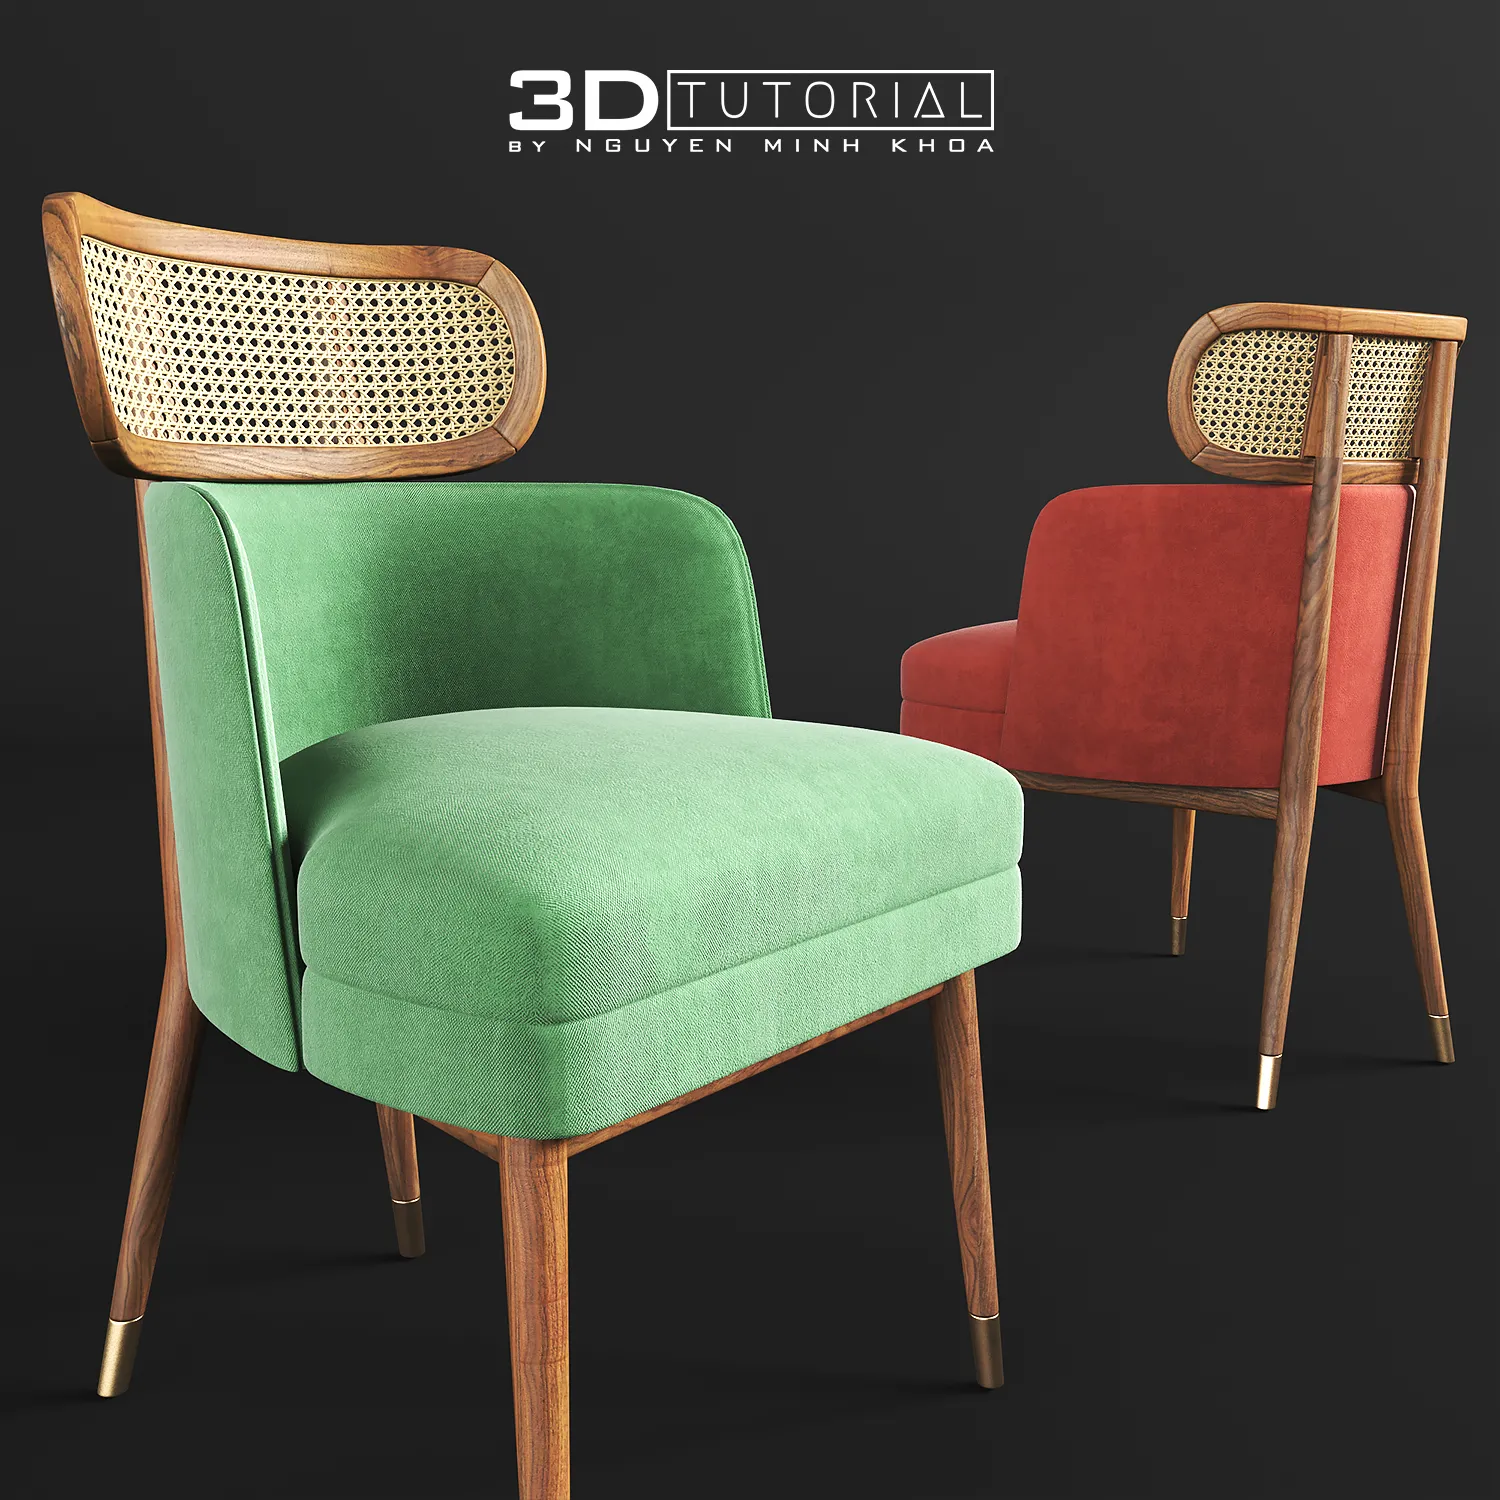 FURNITURE 3D MODELS – Dining Chair Carter modelbyNguyenMinhKhoa